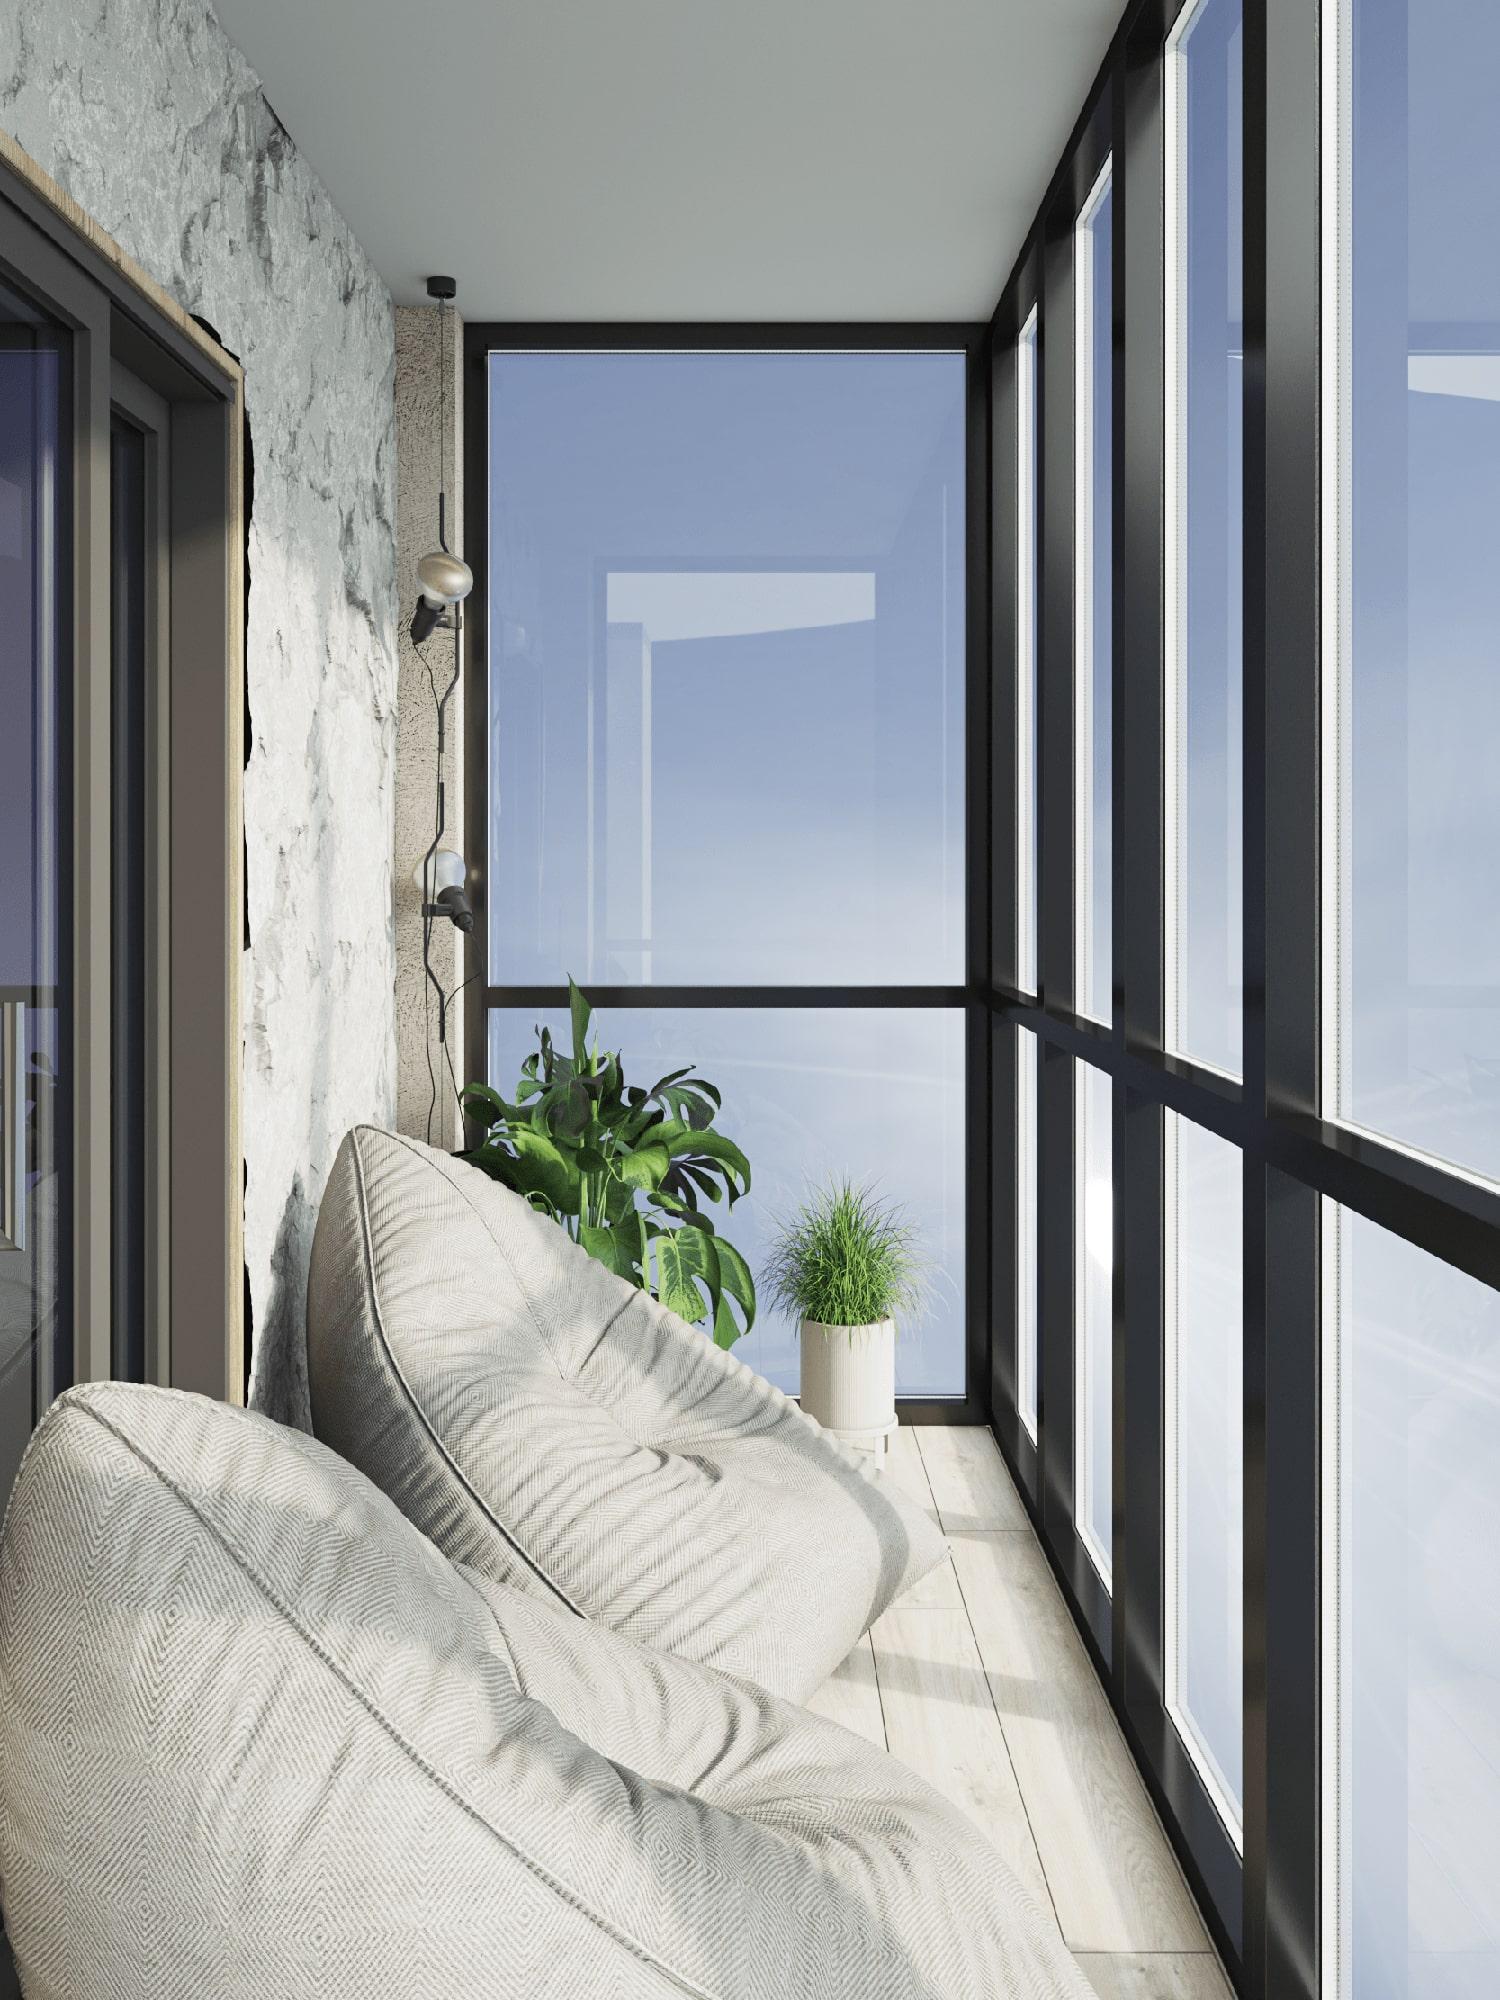 Интерьер балкона с окном, балконом, панорамными окнами и угловым окном